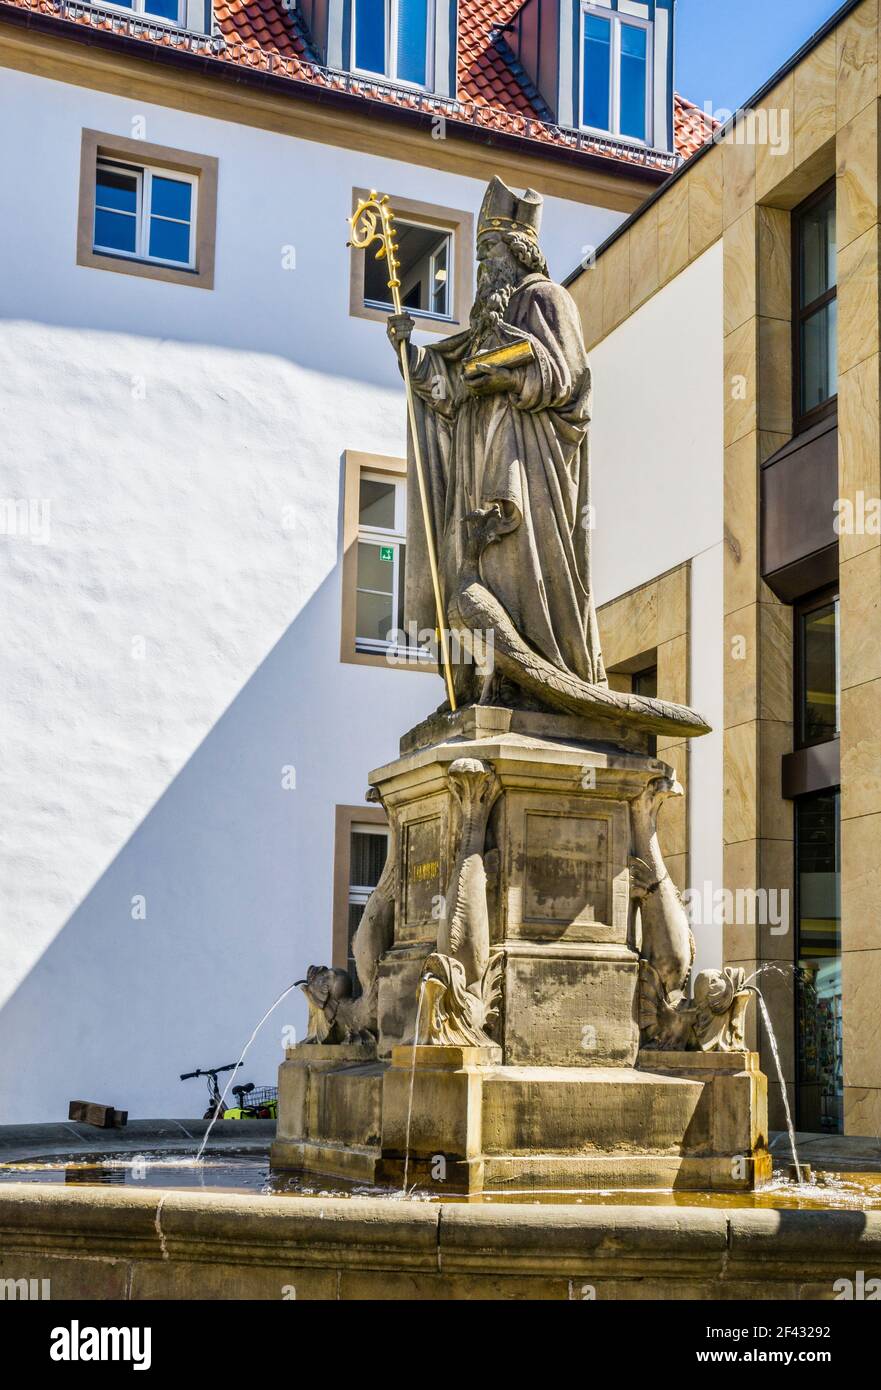 Steinstatue des Heiligen Liborius, des schutzpatrons der Stadt Paderborn, mit Stab, Buch und Pfau, stehend auf einem Sockel in der Mitte eines Zirkus Stockfoto